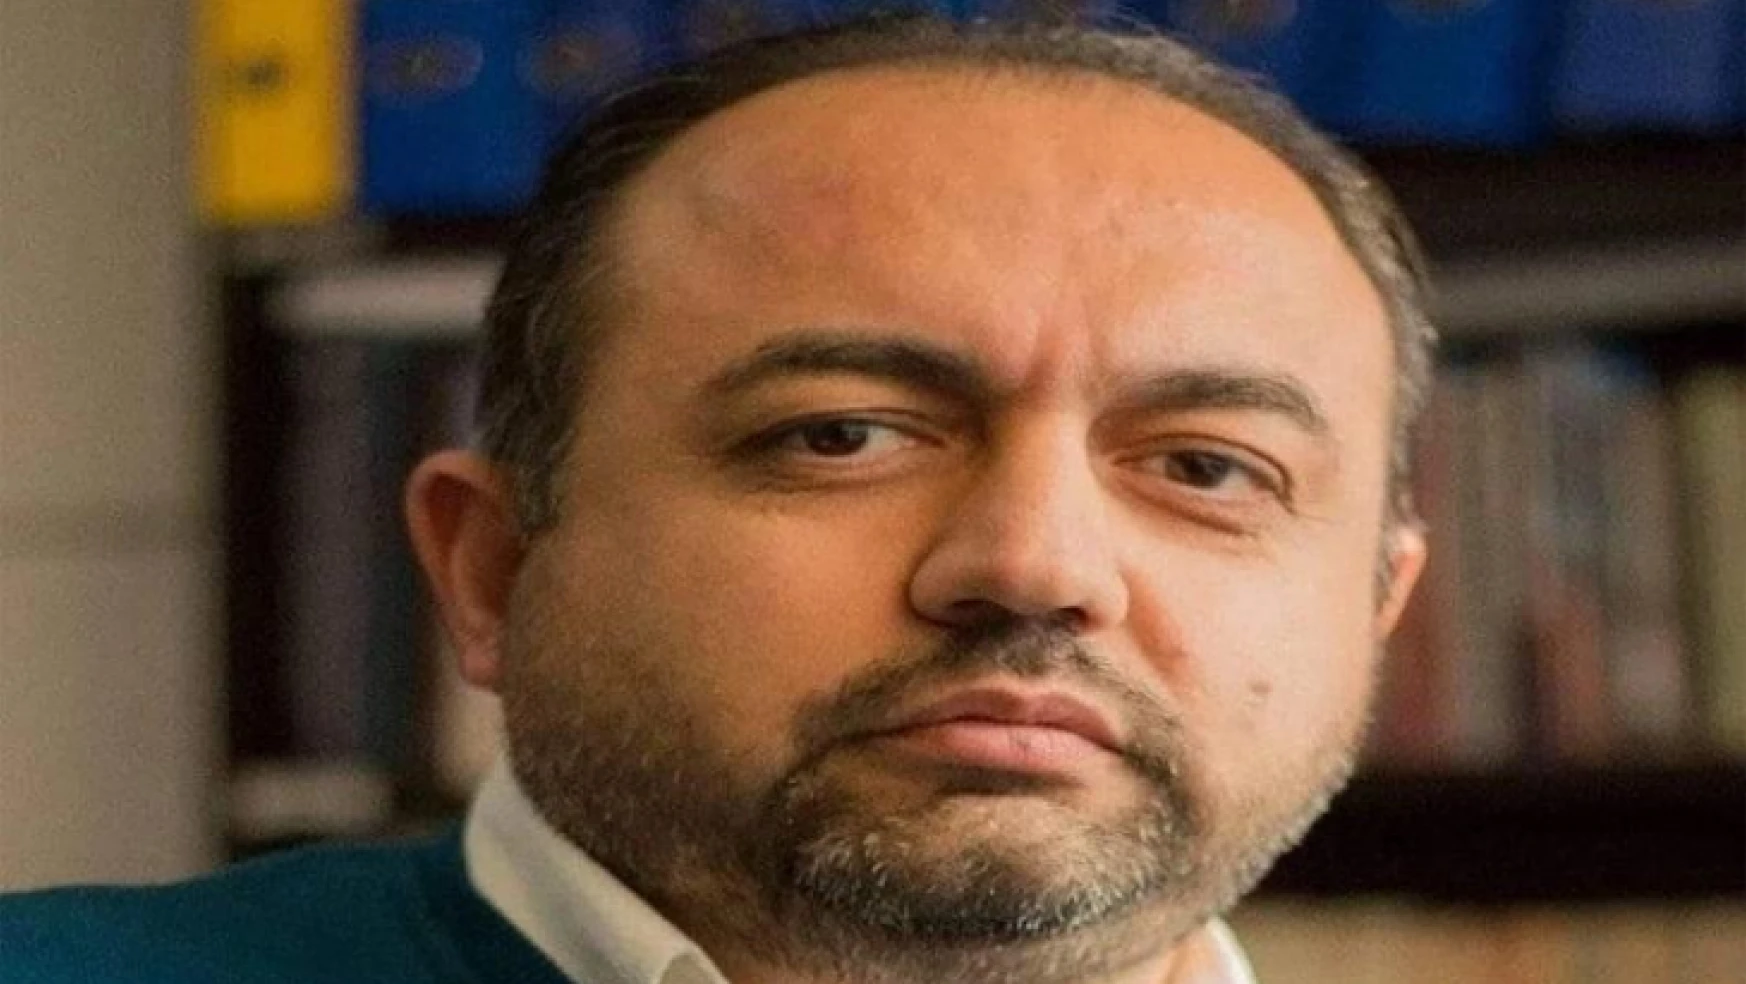 TİMBİR Amasya Kurucusu Ferhat Lap'a Araba Çarptı! Ferhat Lap Hayatını Kaybetti